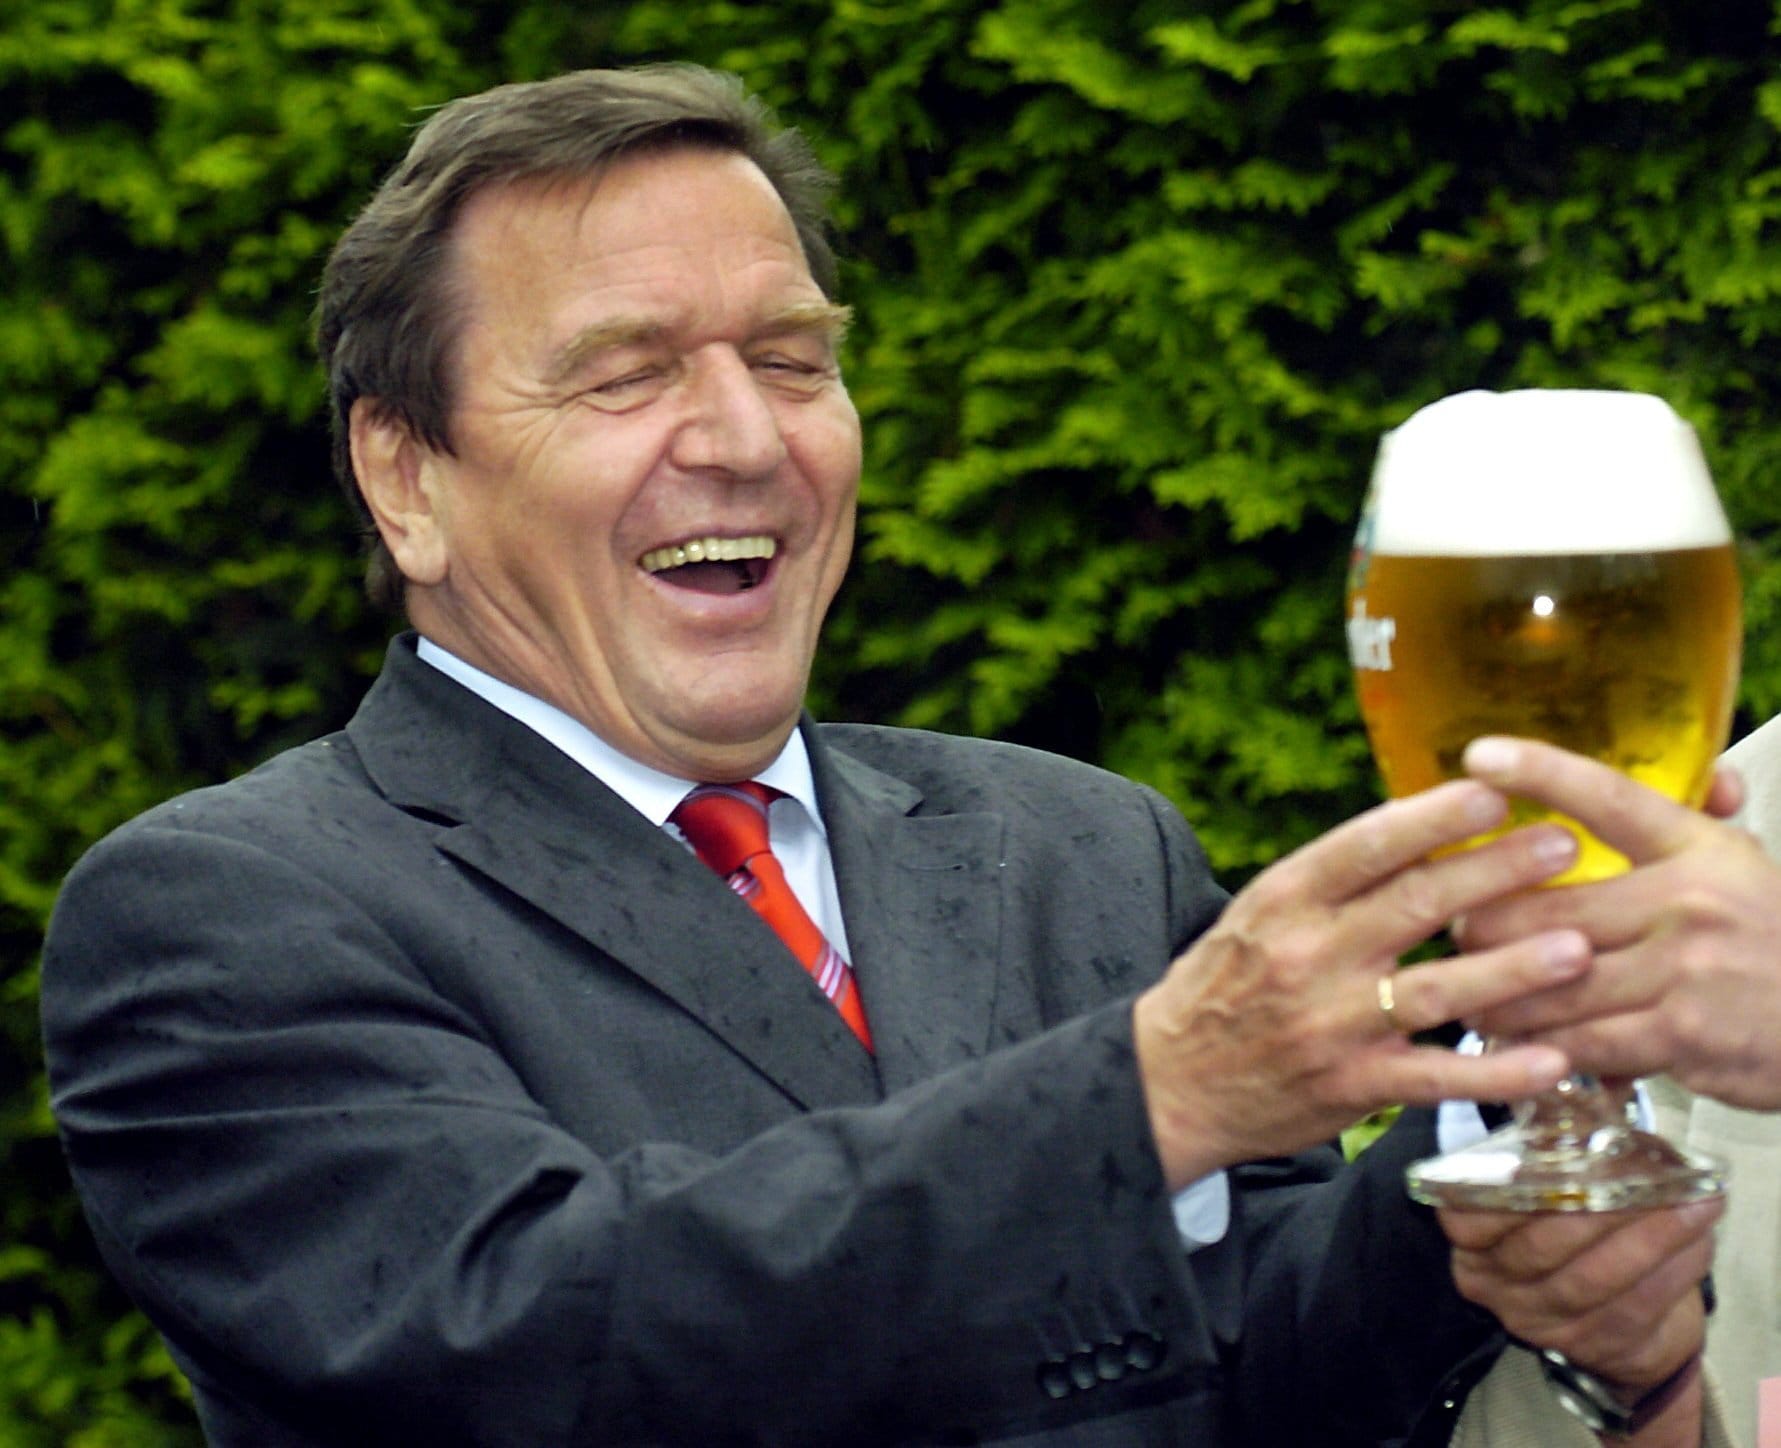 Juli 2004: Der damalige Kanzler Gerhard Schröder in der Gelsenkirchener Kleingartenanlage Bismarckhain. Der gelernte Jurist gibt sich gerne besonders volksnah.